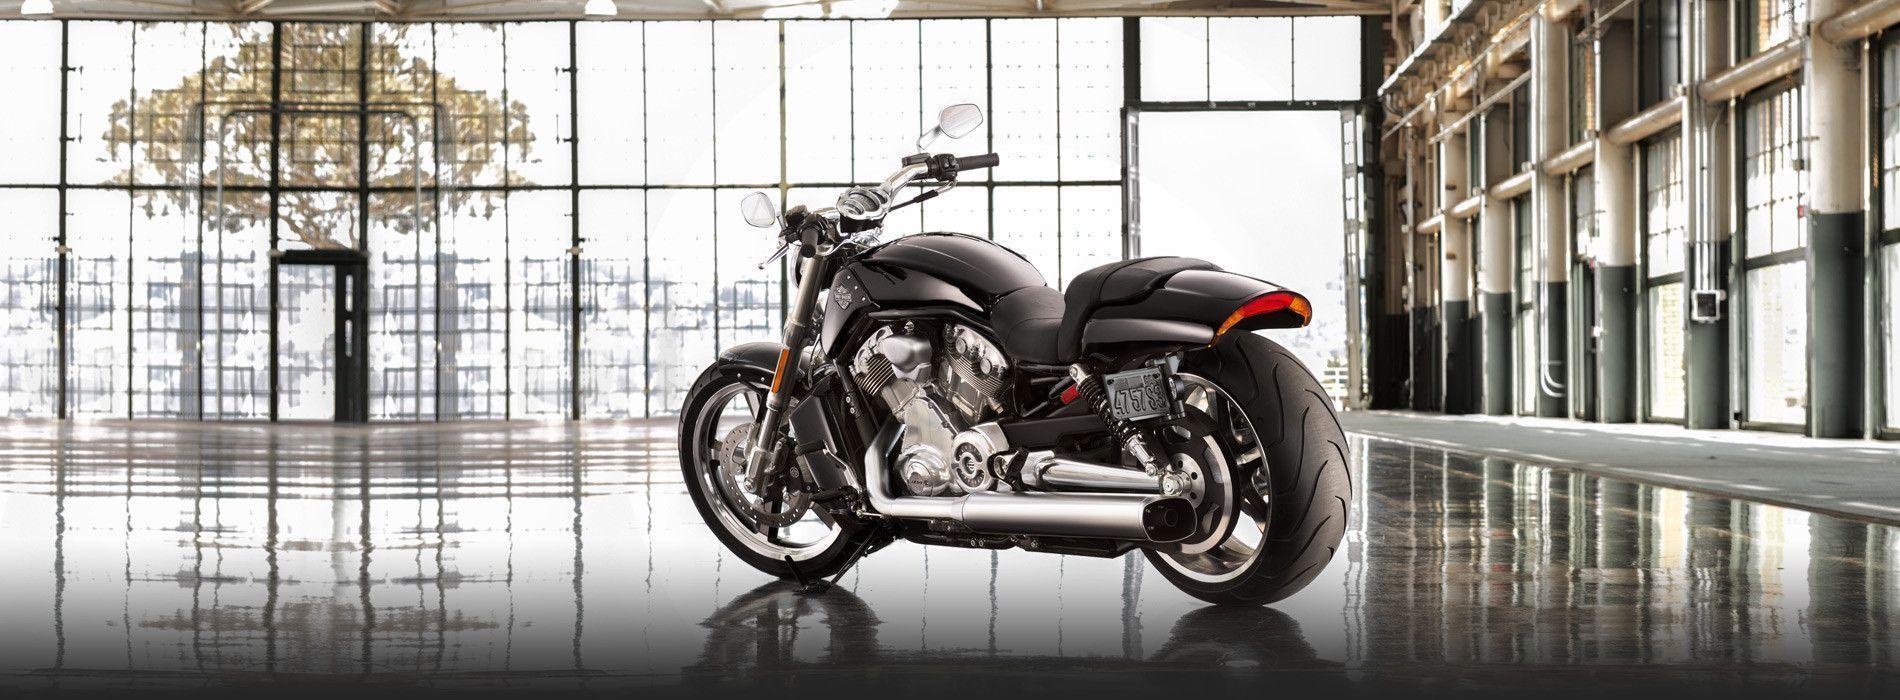 V Rod Muscle. VRSCF Drag Motorcycle. Harley Davidson USA